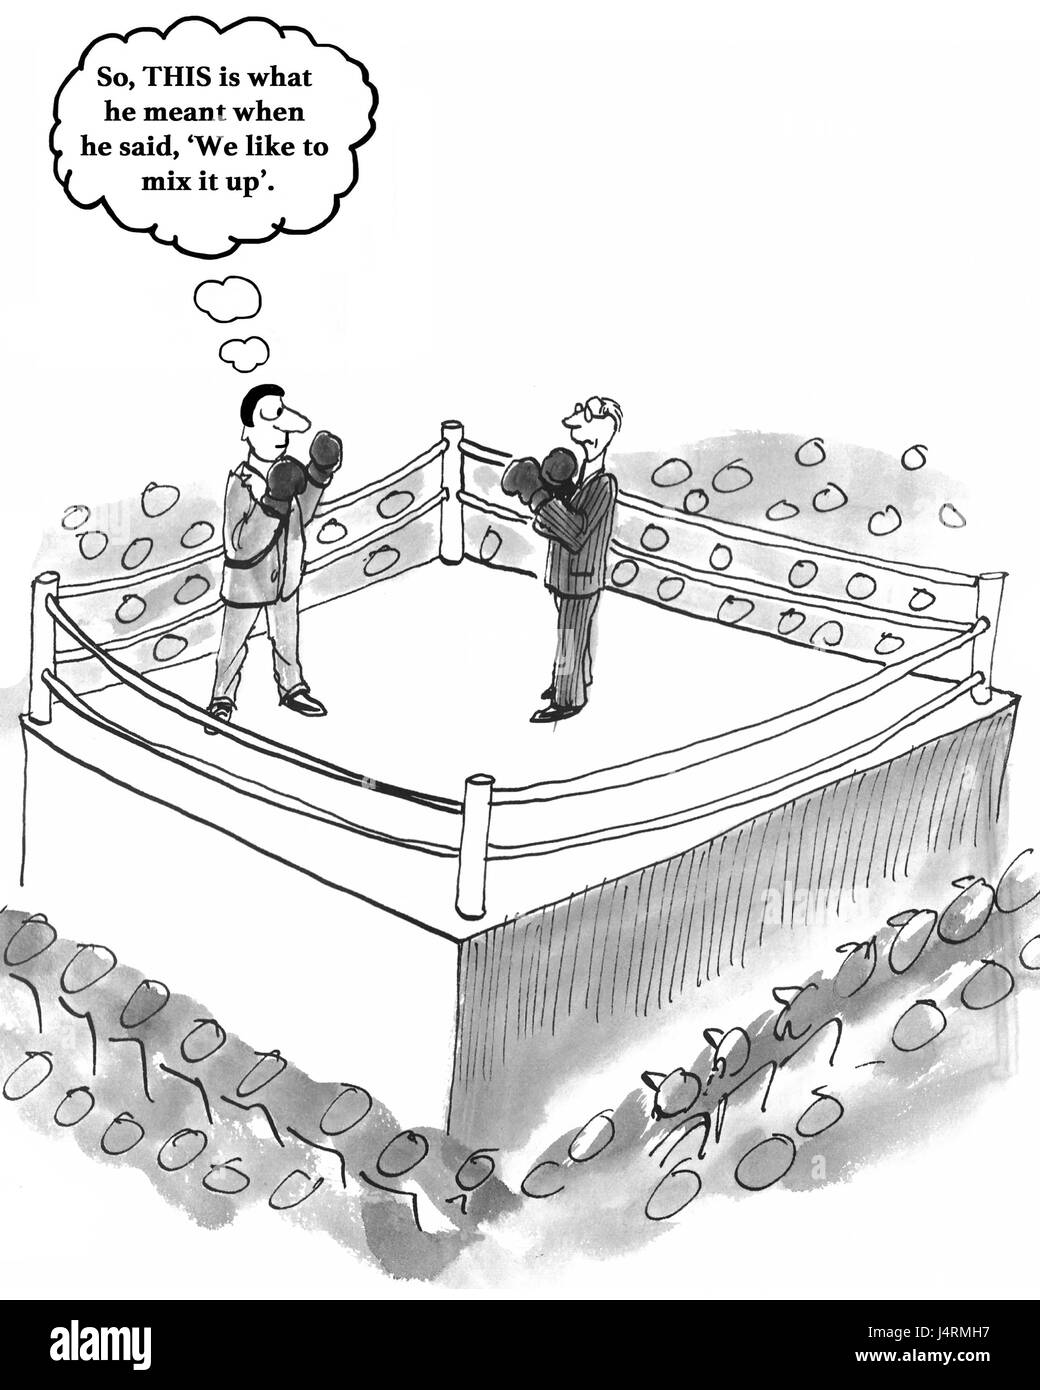 Geschäftliche Cartoon über eine Unternehmenskultur, die gerne "es mischen". Stockfoto